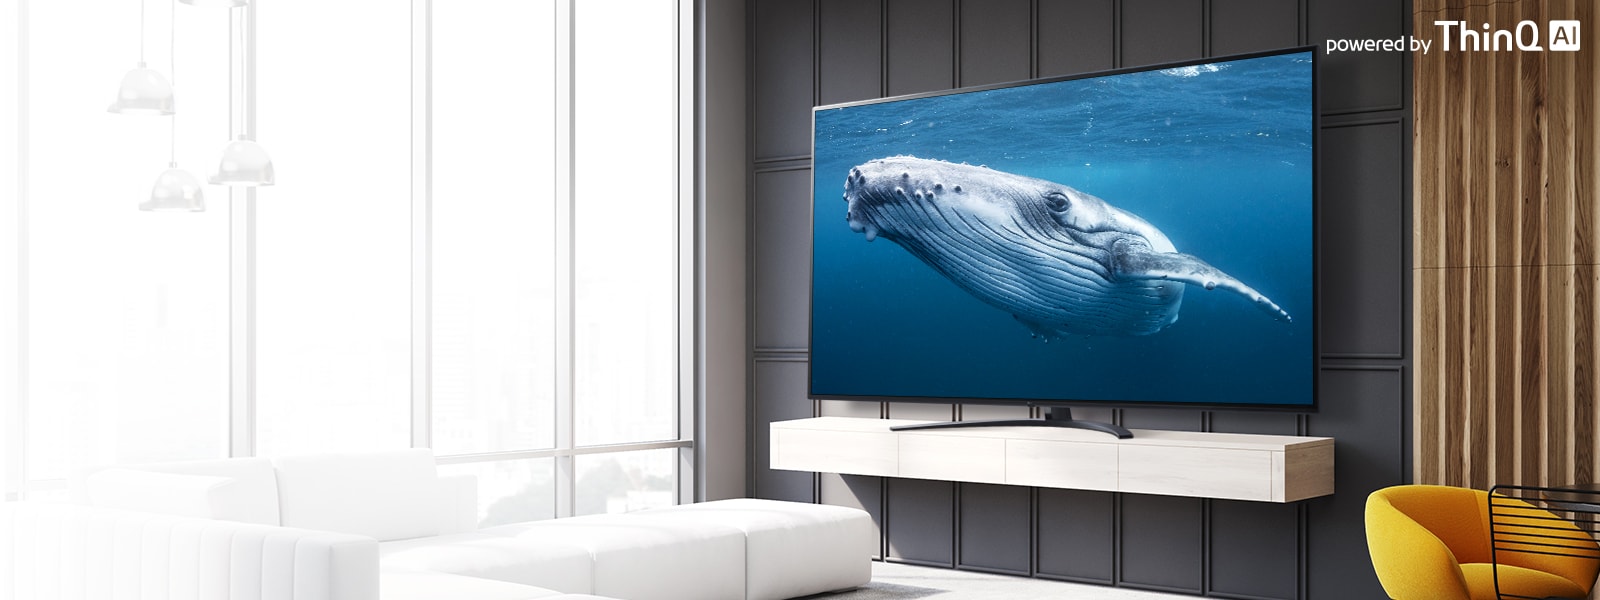 בתוך סלון, יש מסך טלוויזיה גדול המציג תמונה של לווייתן גדול בים. בתמונה מוצג מסך טלוויזיה גדול בצד שמאל והלוגו ‚בהפעלת ThinQ AI‘ מופיע בחלק הימני העליון.